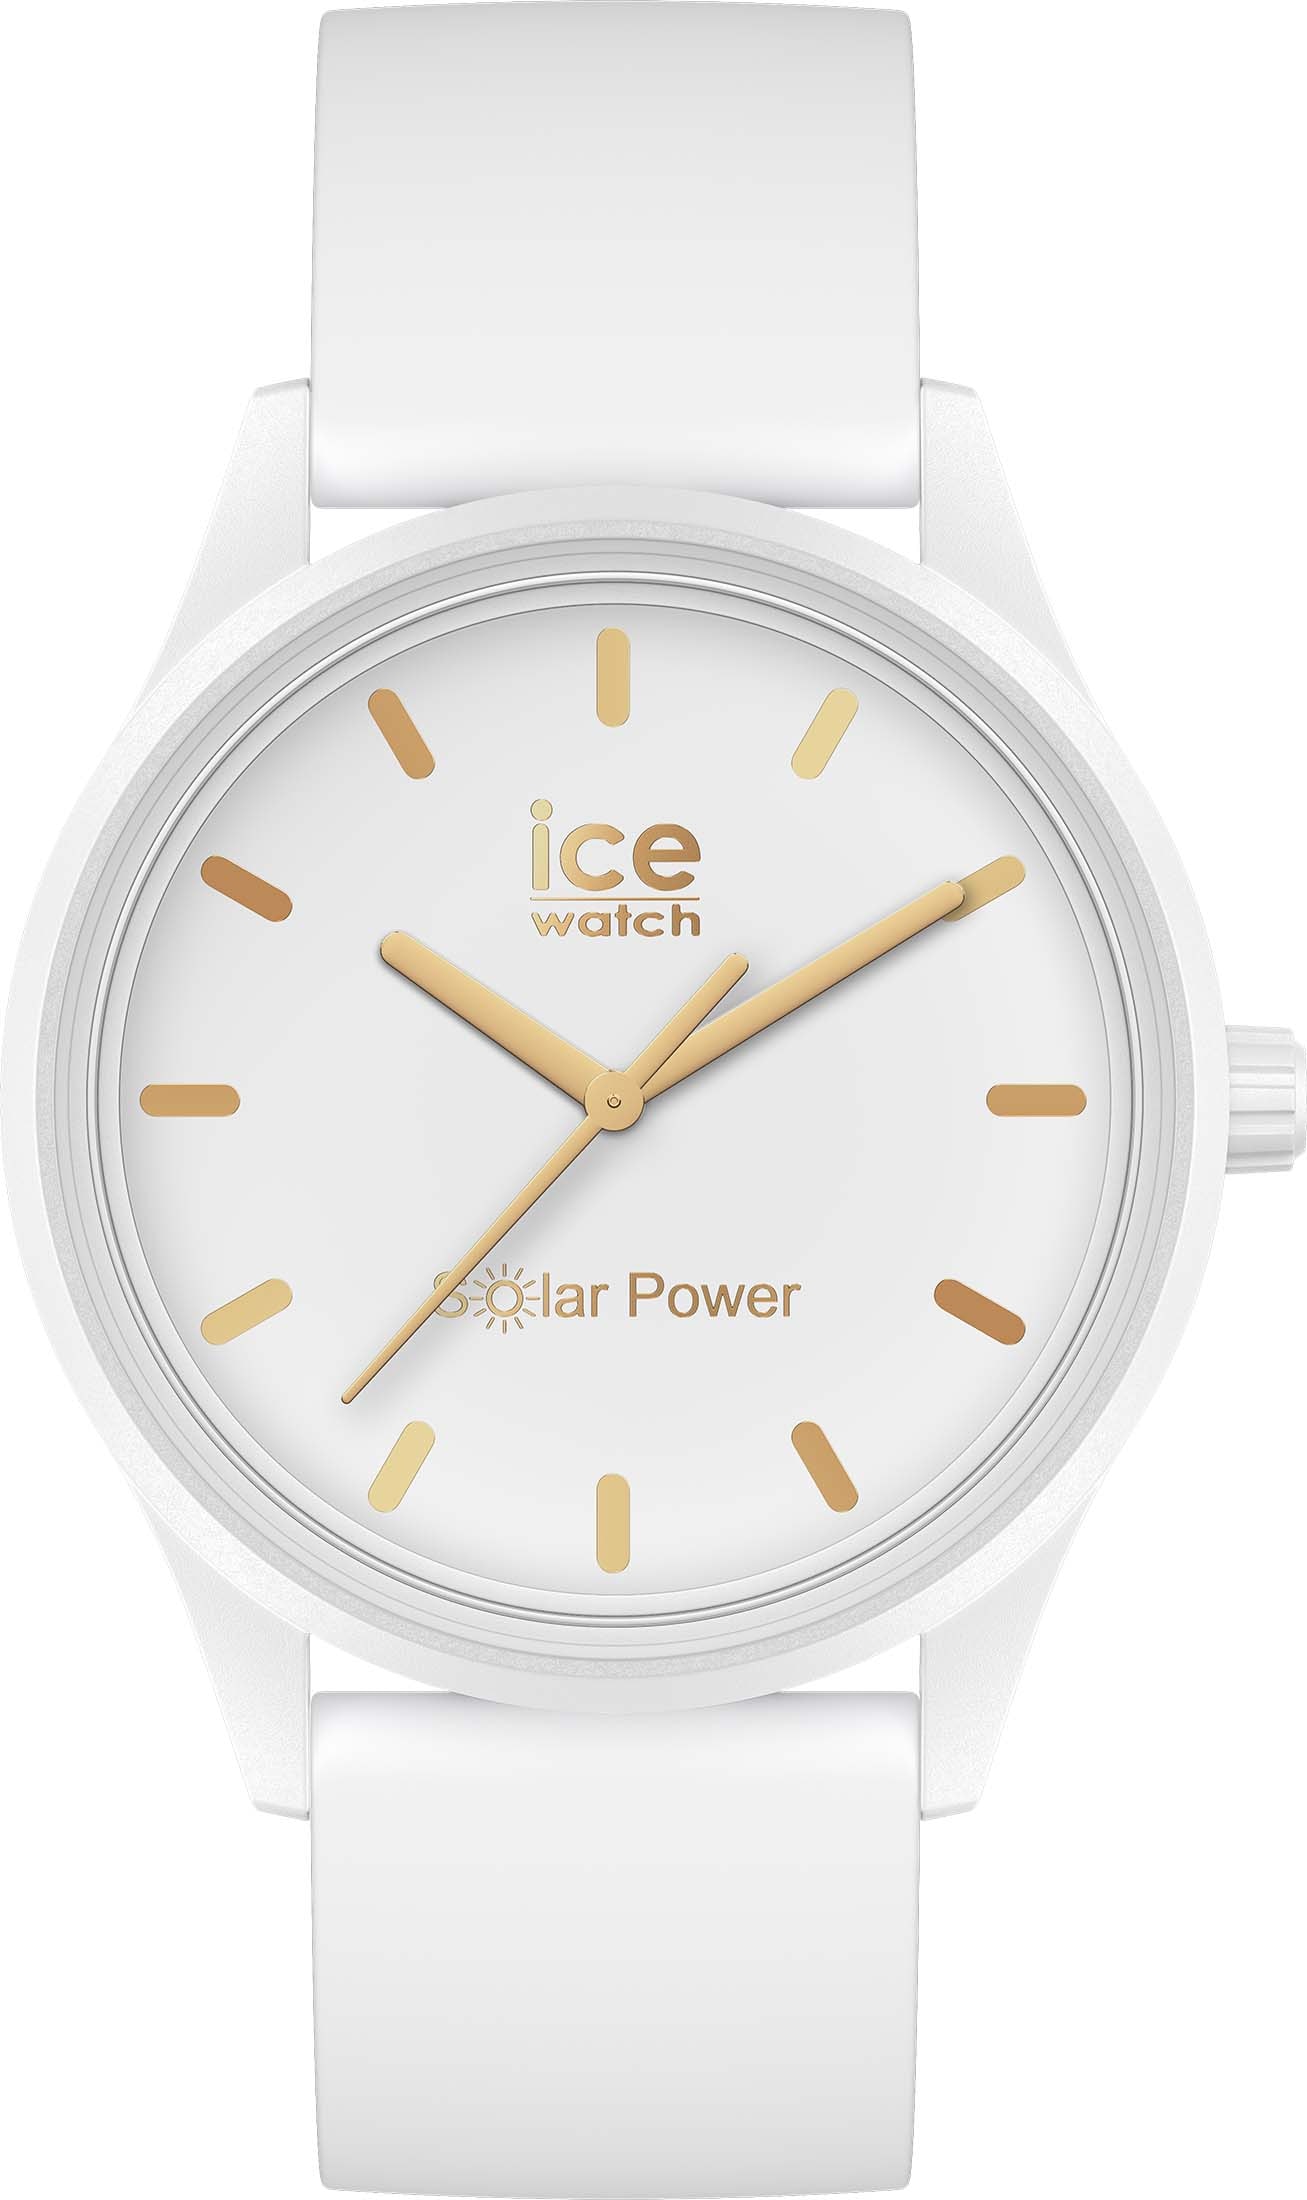 Solar gold »ICE bestellen 020301« bei ice-watch power-White M, Solaruhr OTTO